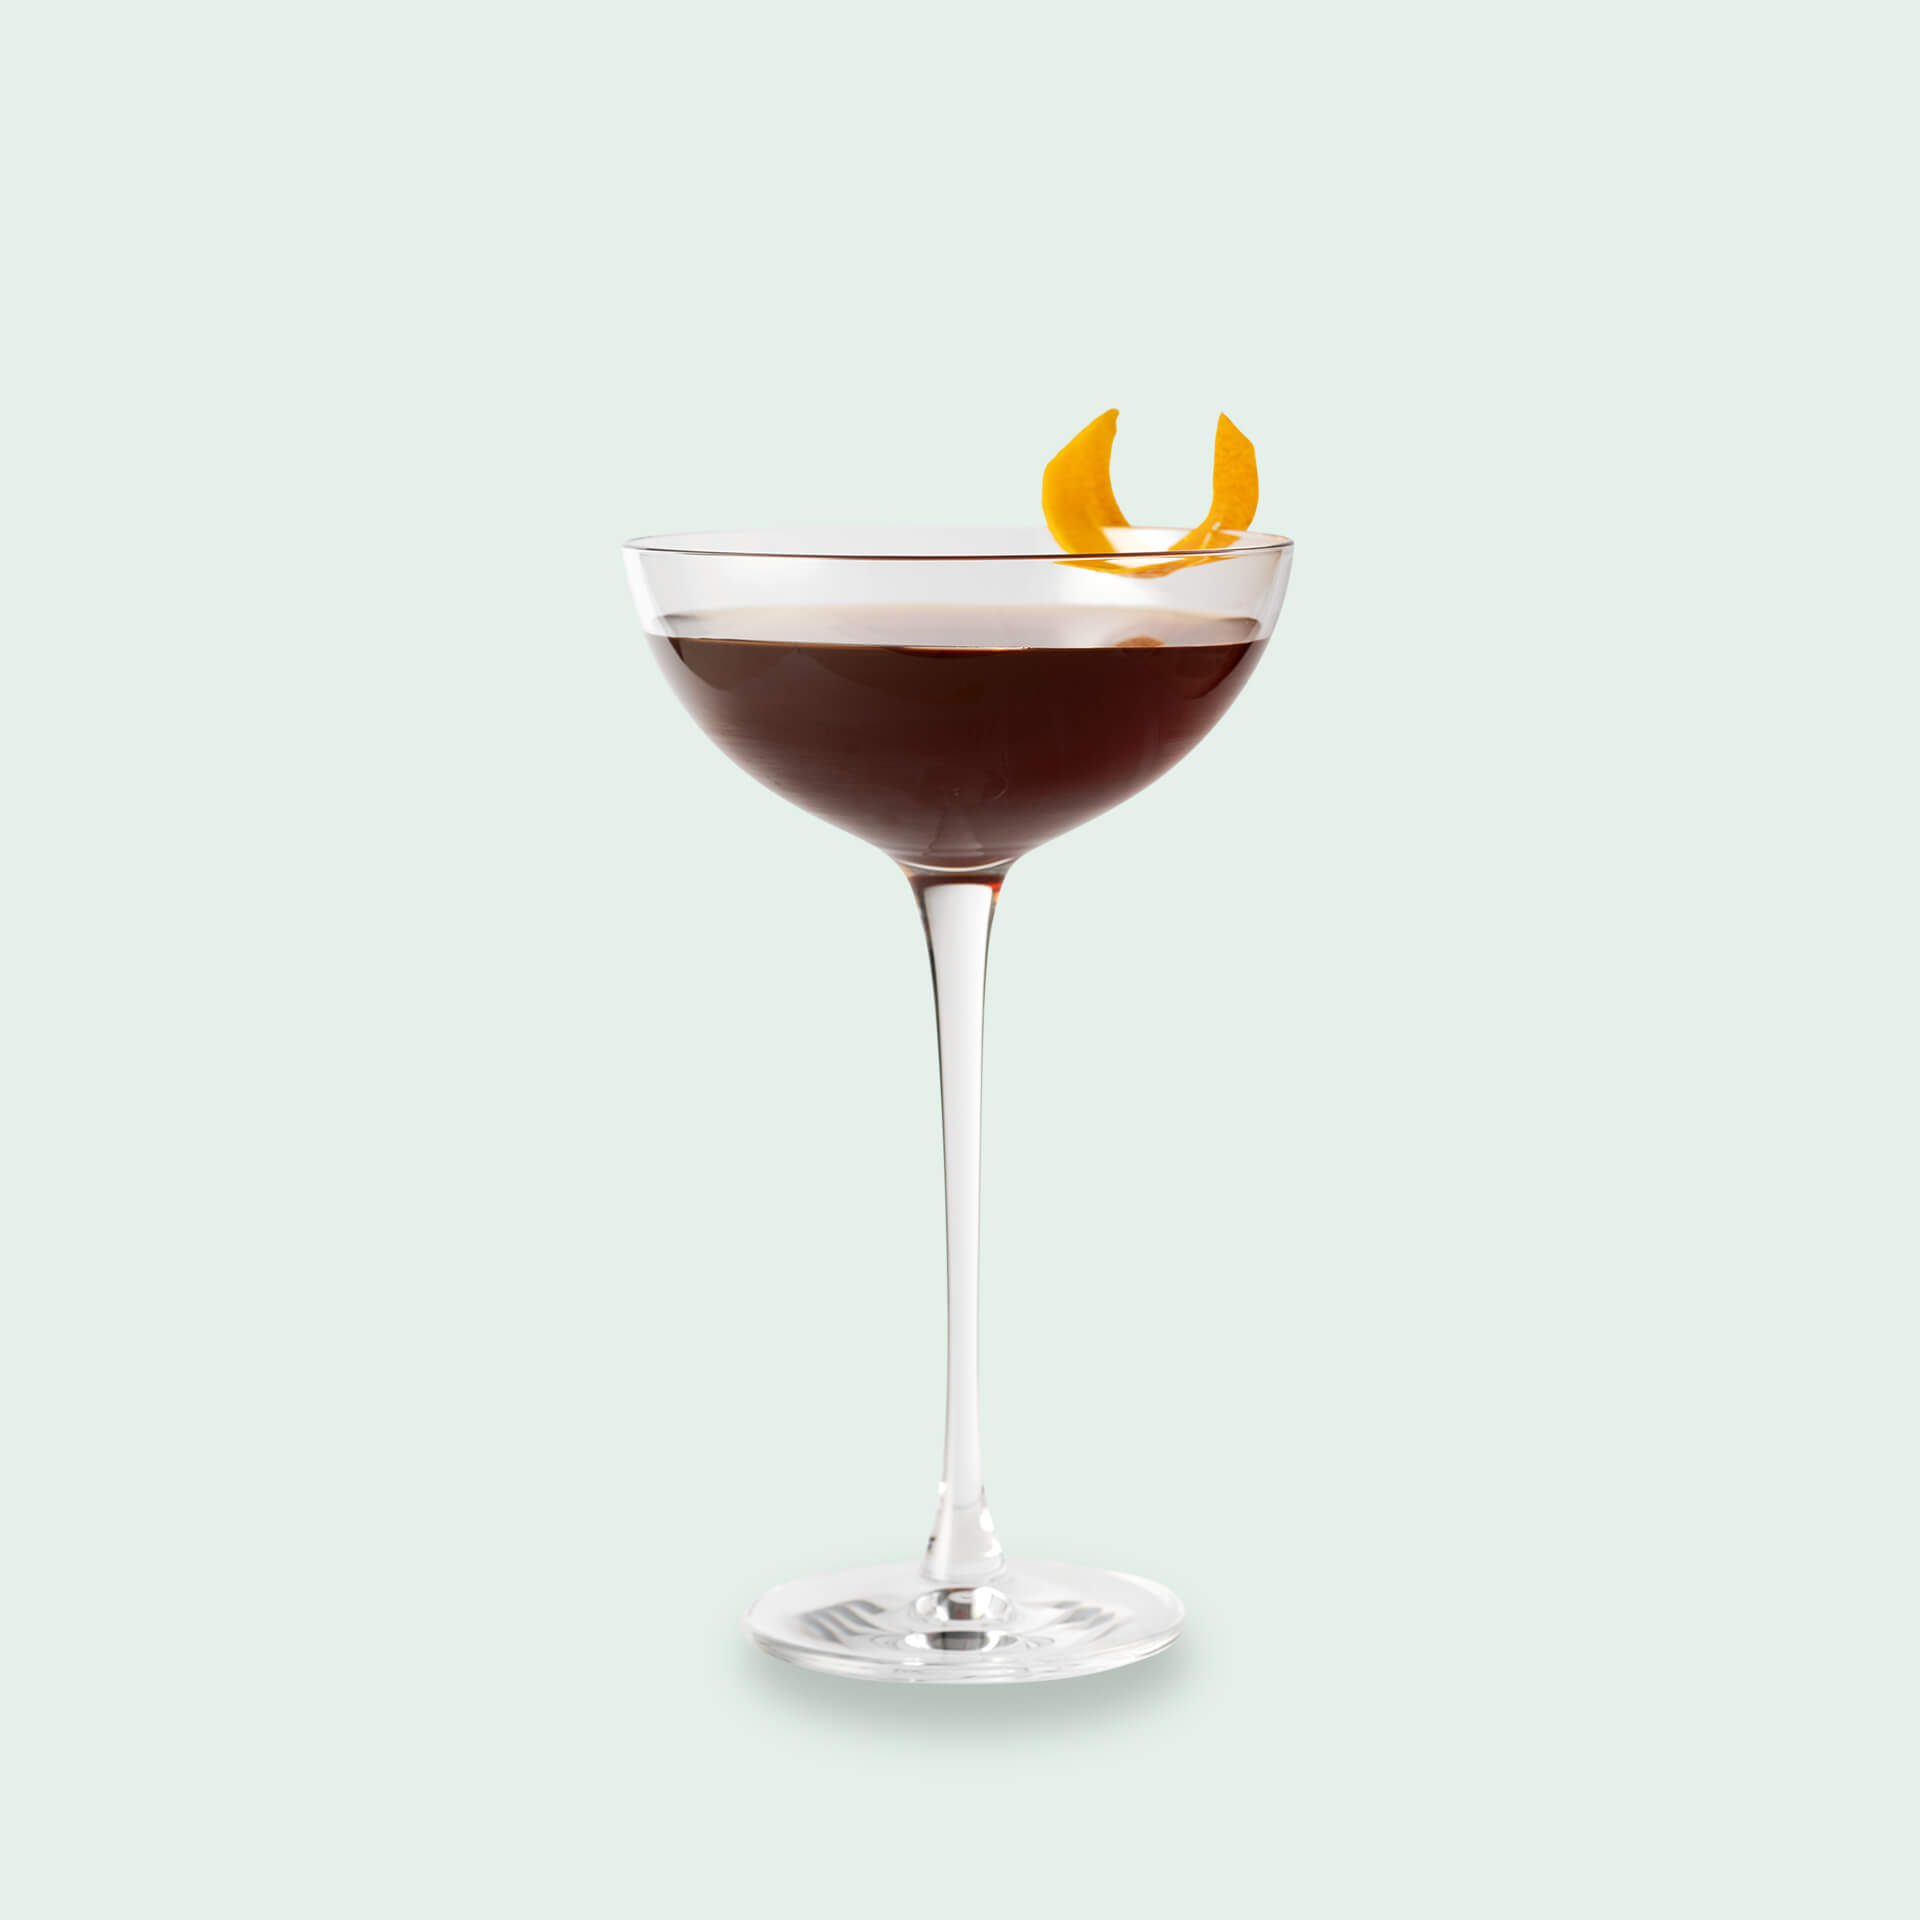 Traube - Whisky Aperitif Cocktail im Cocktail Set von Drink Syndikat